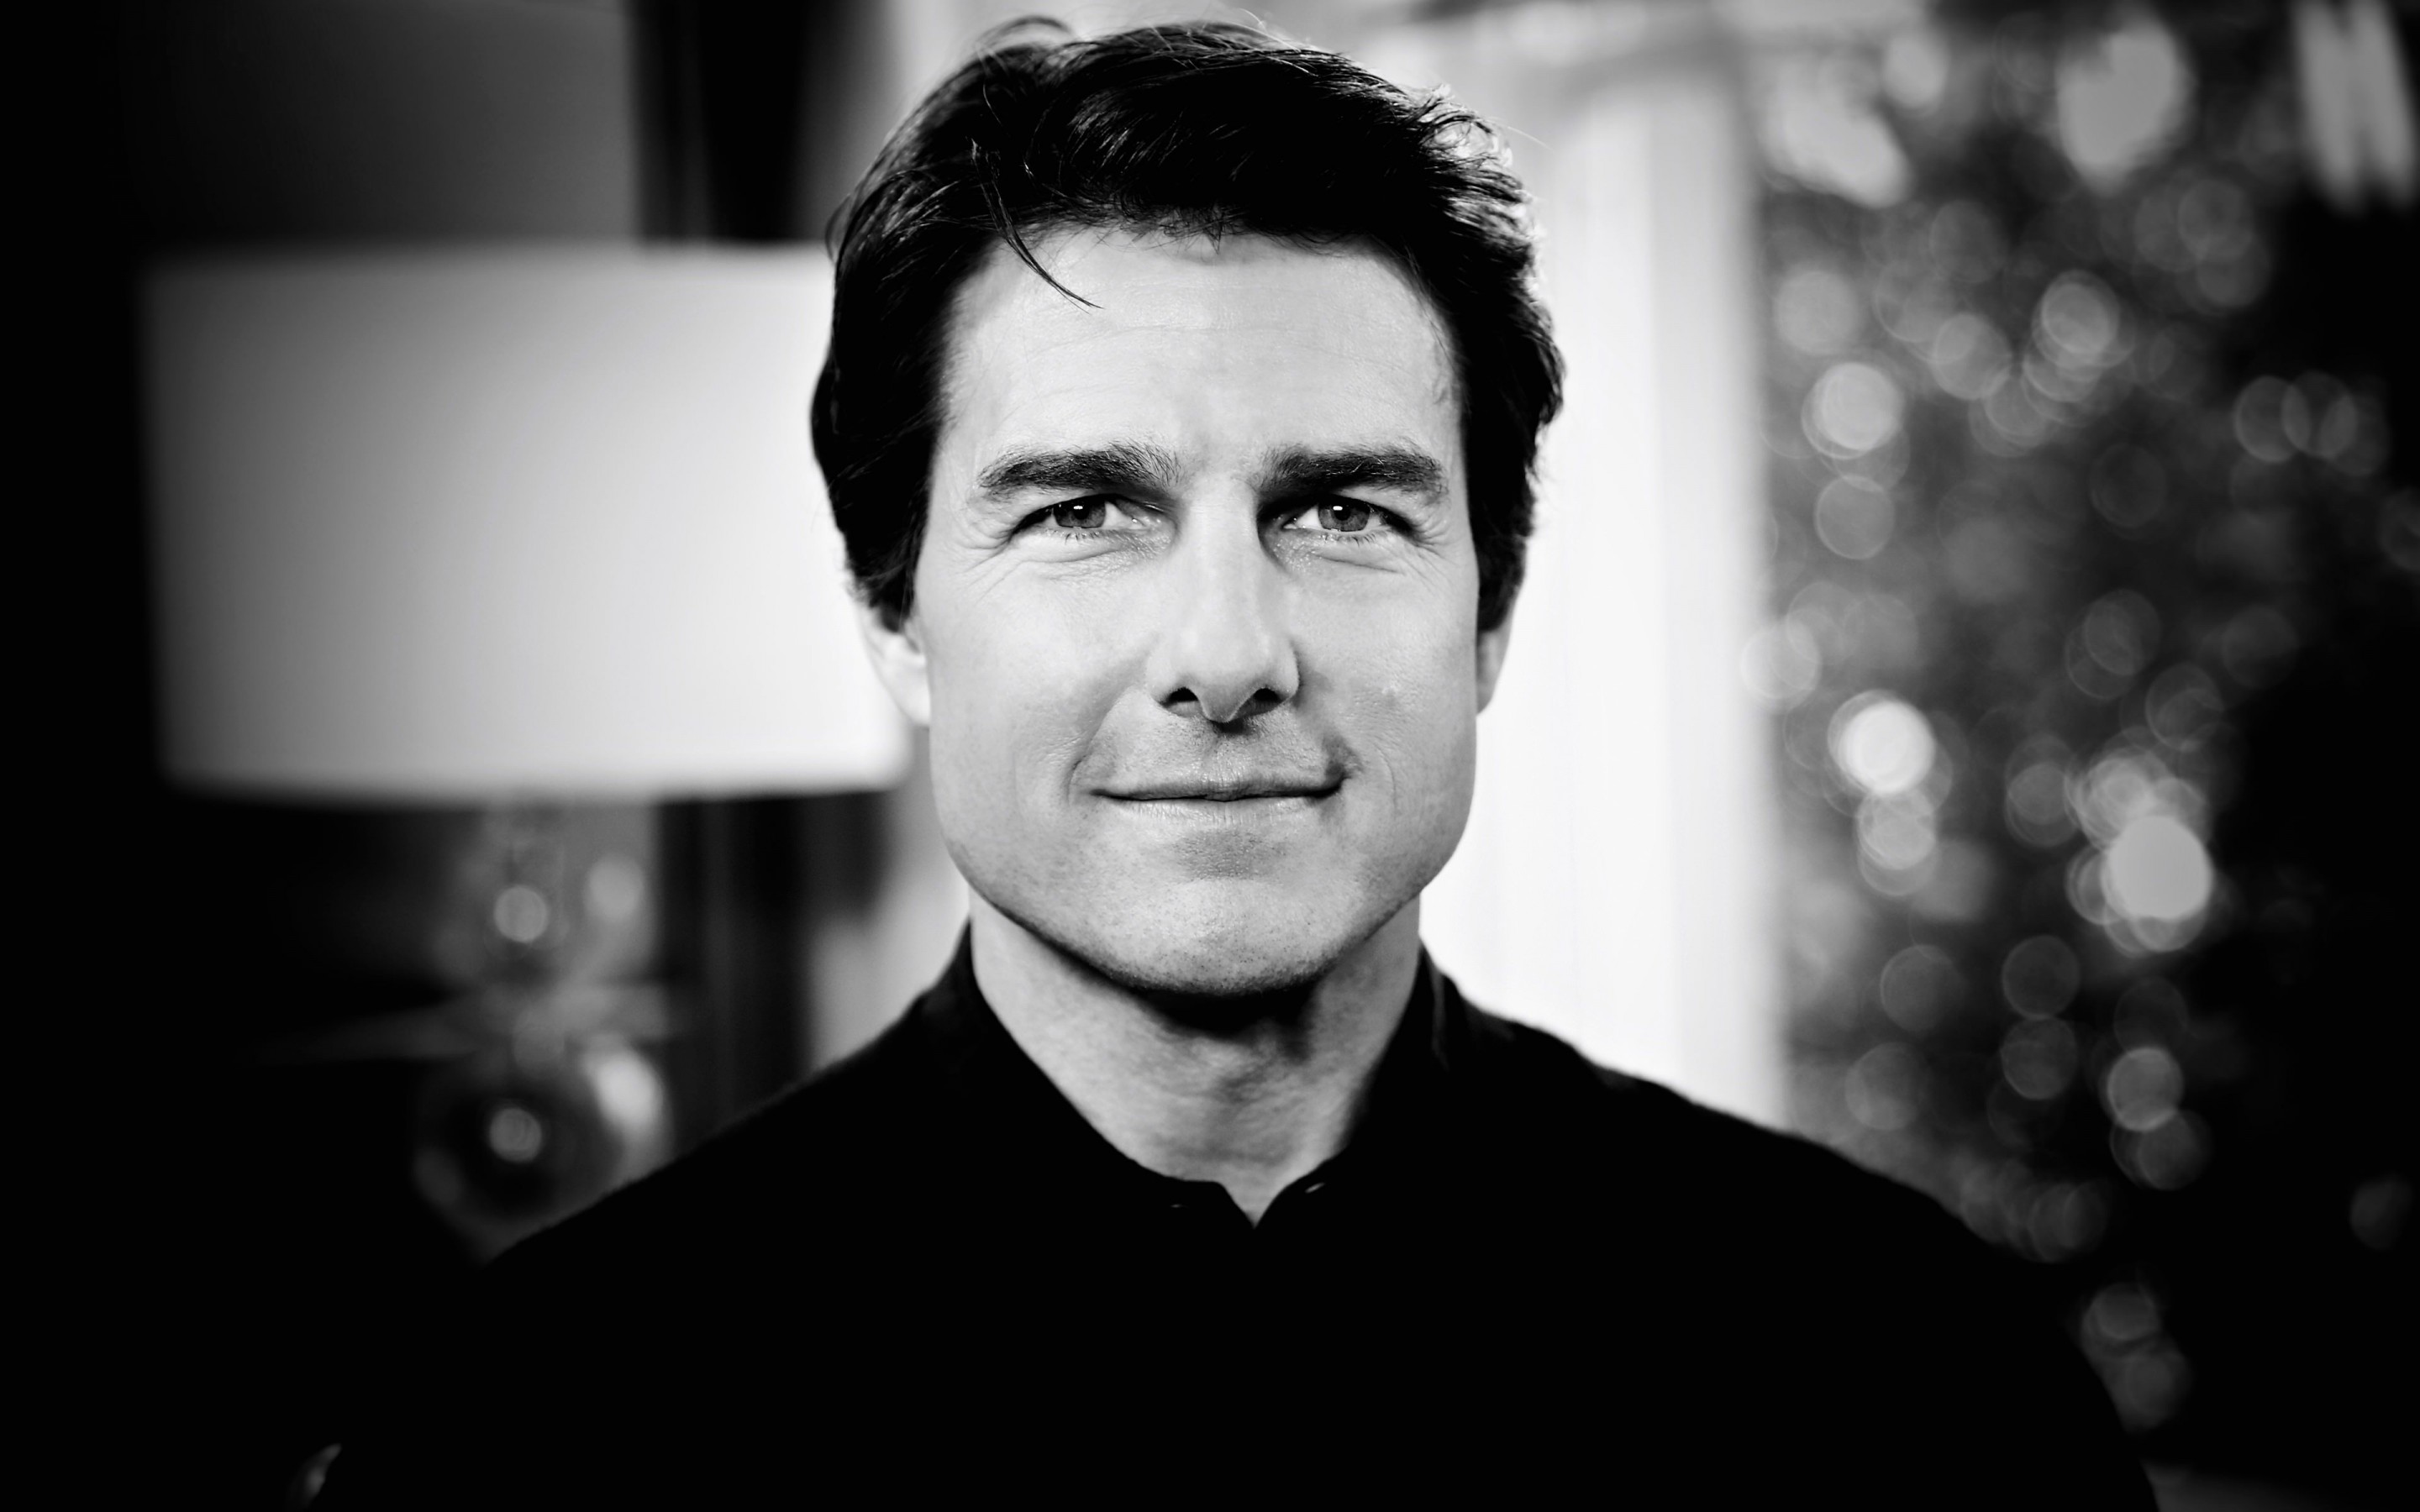 Tom Cruise Black & White Portrait Wallpaper for Desktop 2880x1800